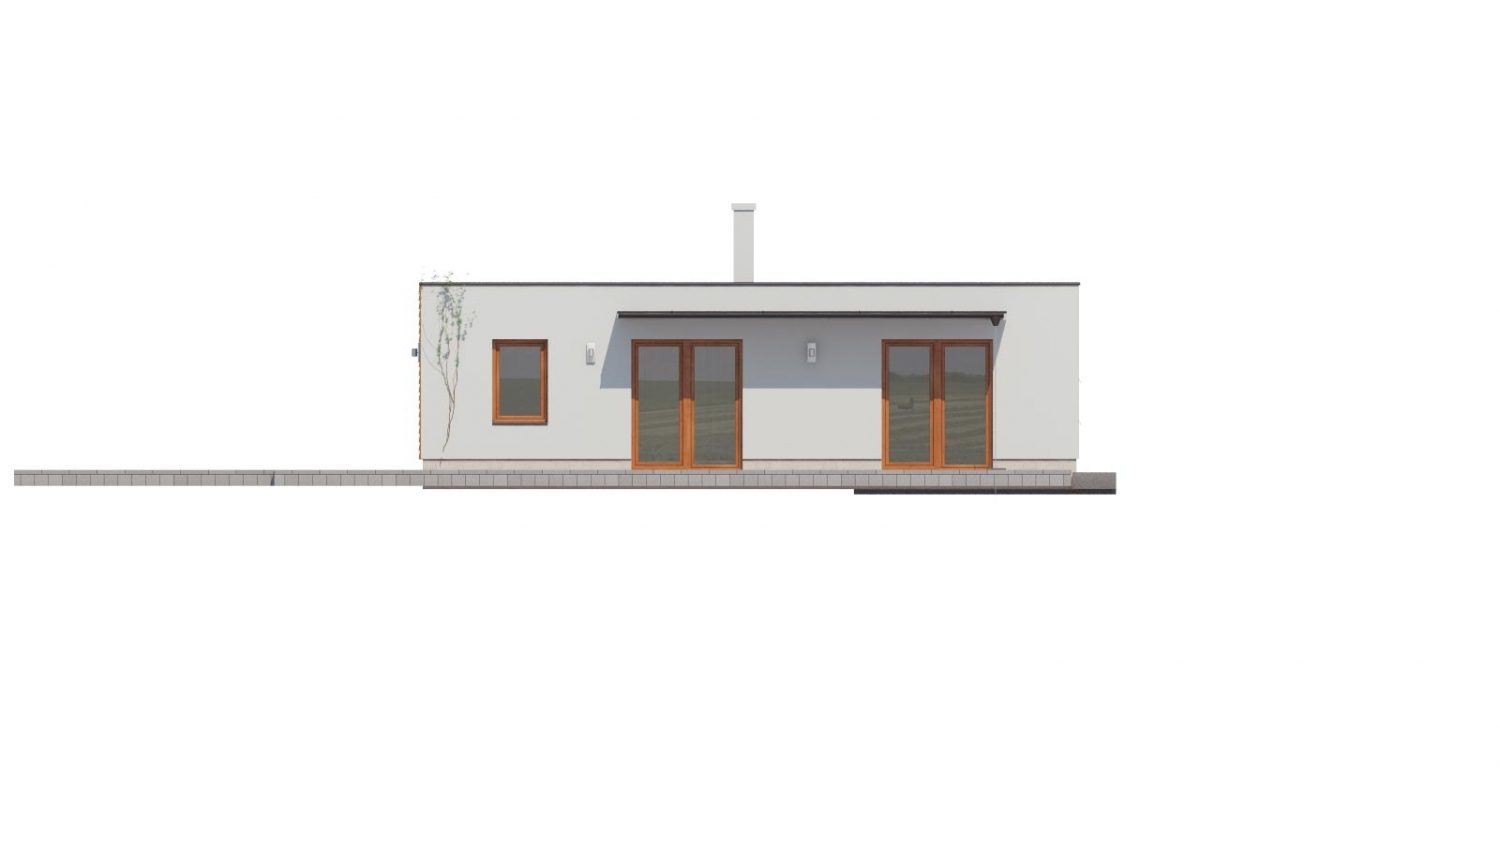 Zrkadlový pohľad 3. - Moderní atriový rodinný dům ve tvaru U s garáží, plochou střechou. Vhodný i na úzký pozemek.